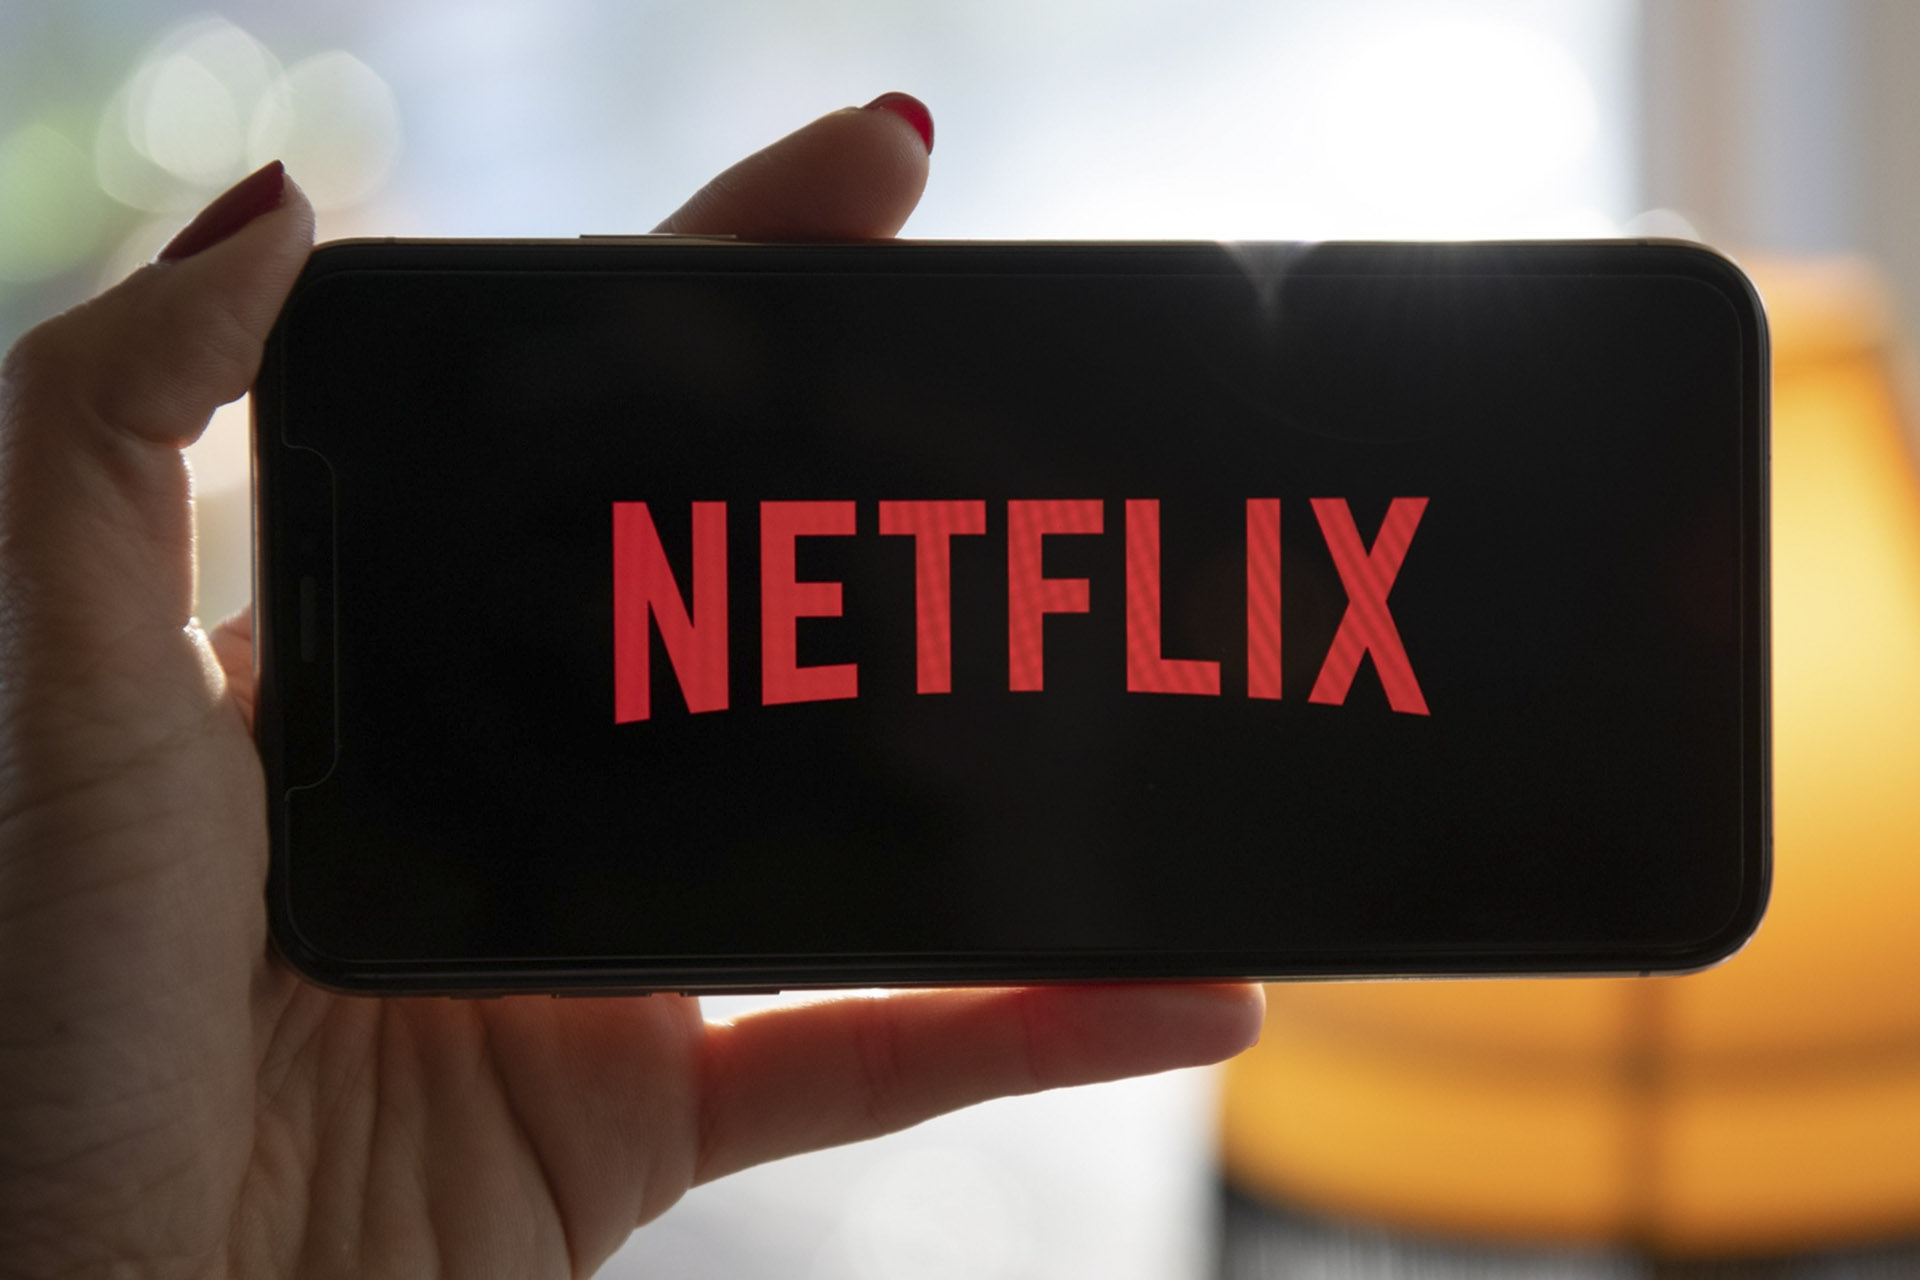 Itt az új szabályozás – a Netflix sem lehet kivétel